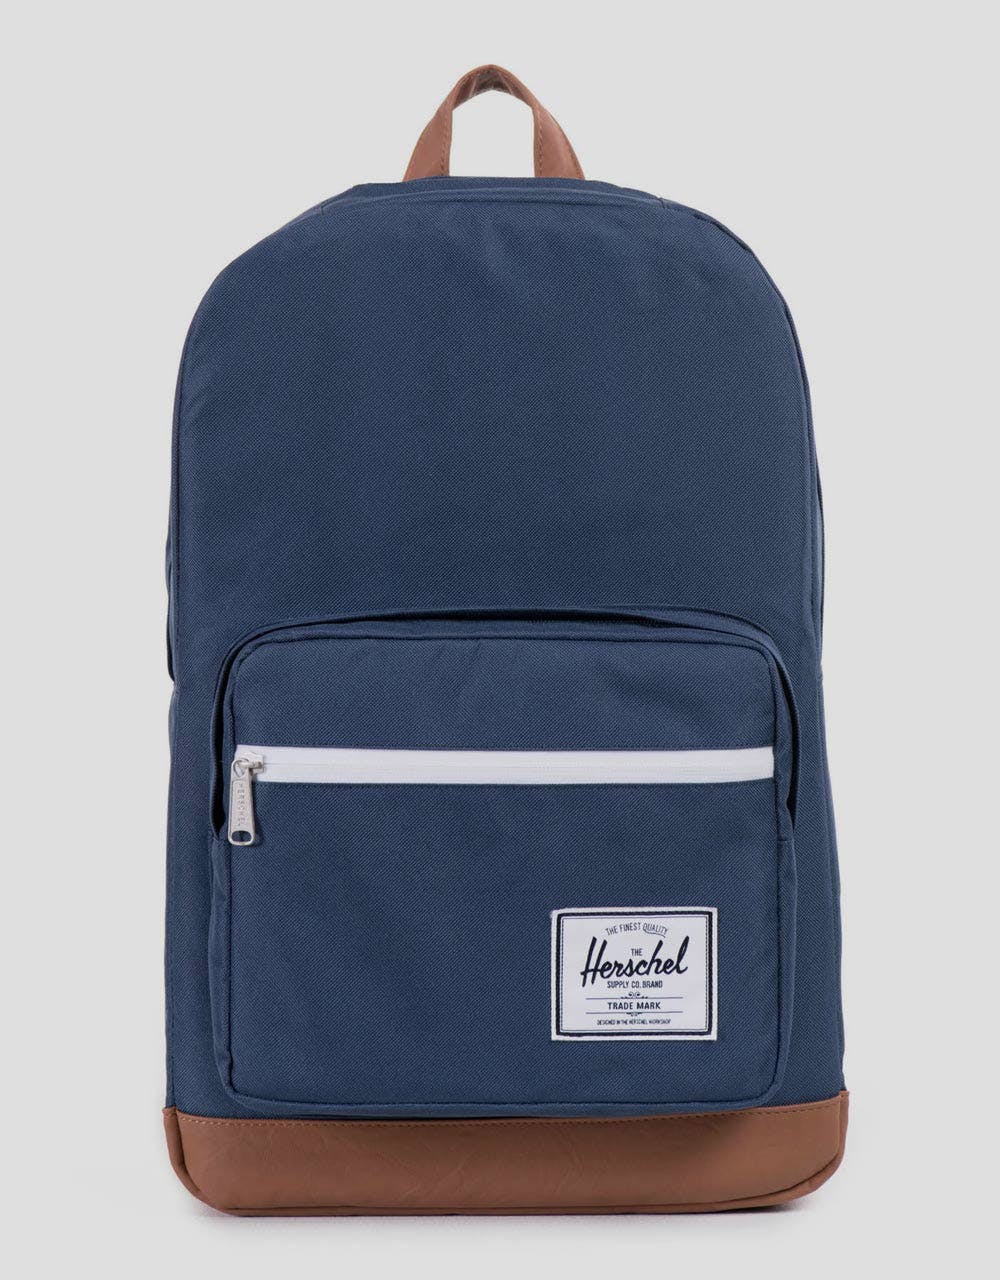 Herschel Supply Co. Pop Quiz Backpack - Navy/Tan